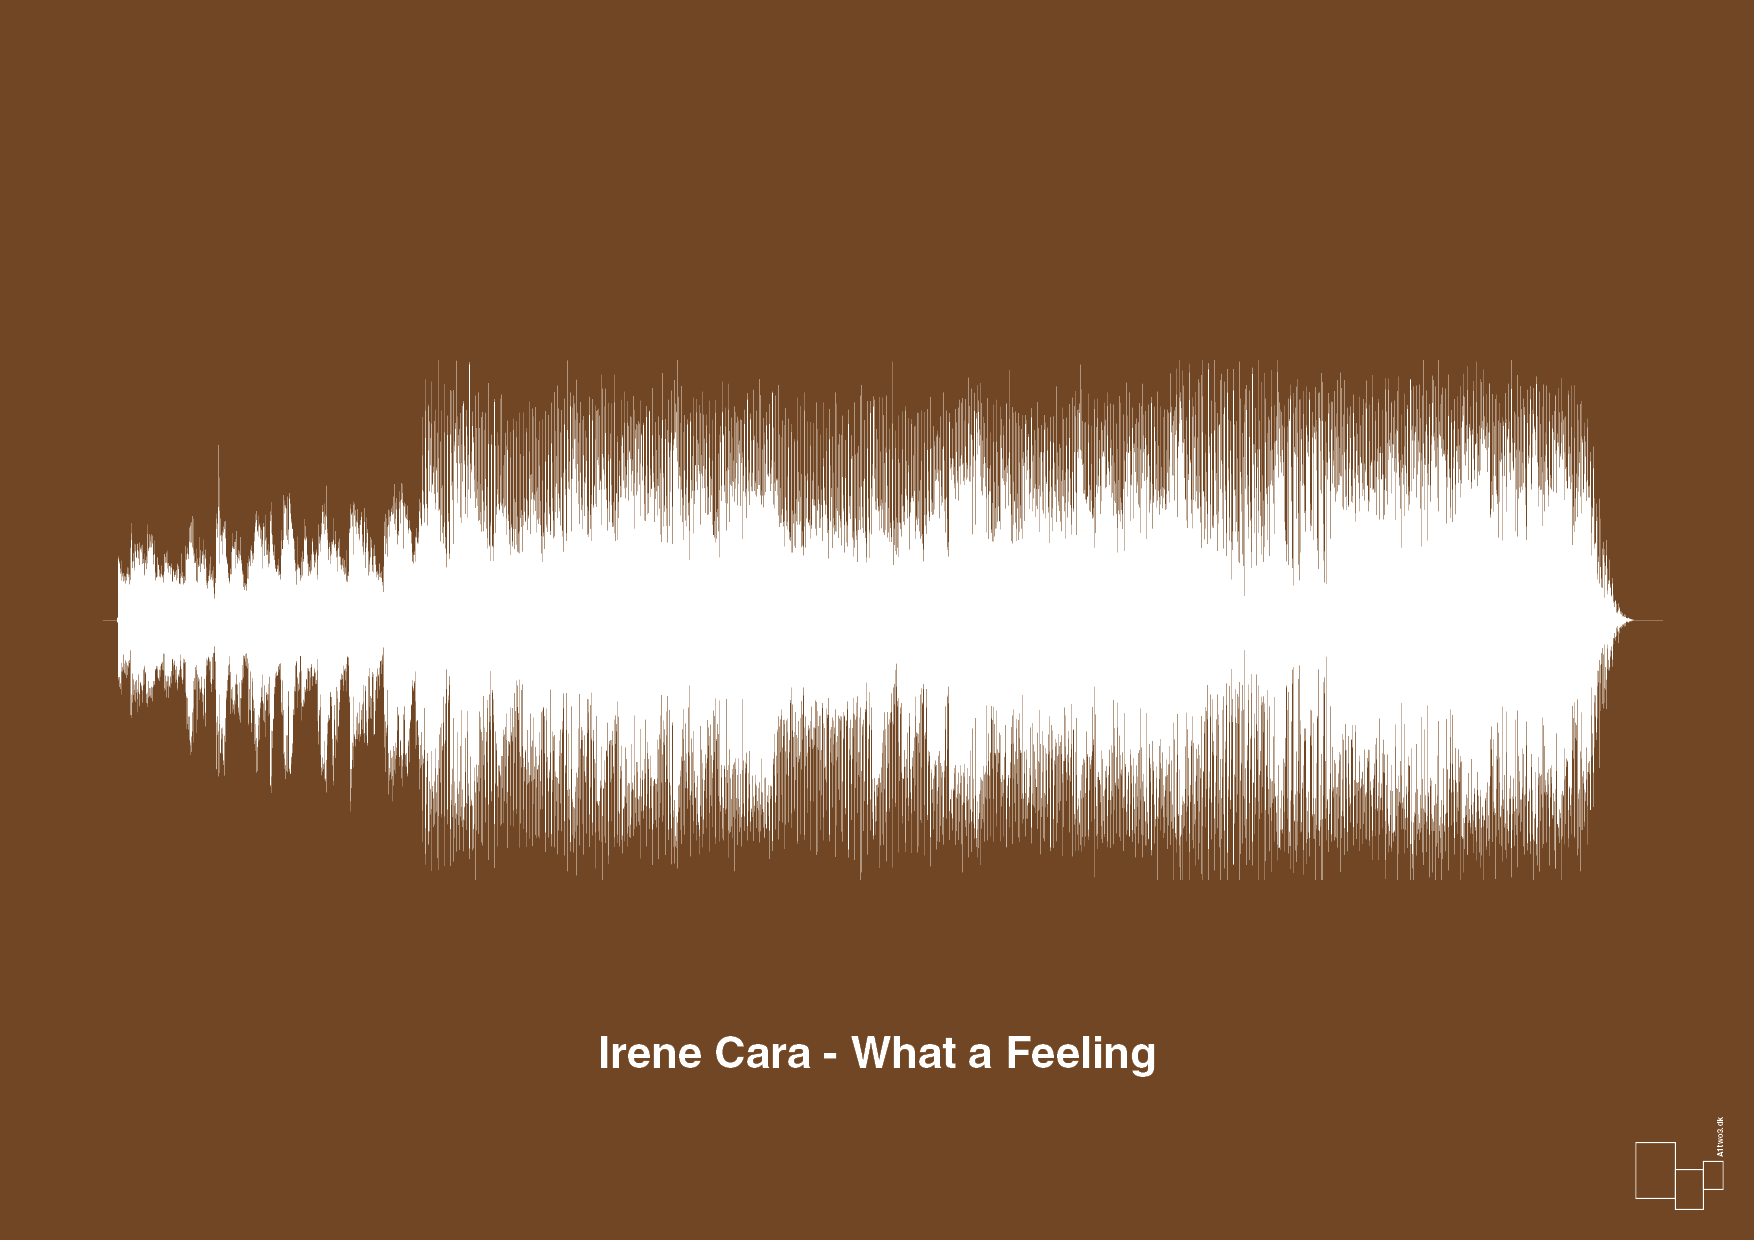 irene cara - what a feeling - Plakat med Musik i Dark Brown